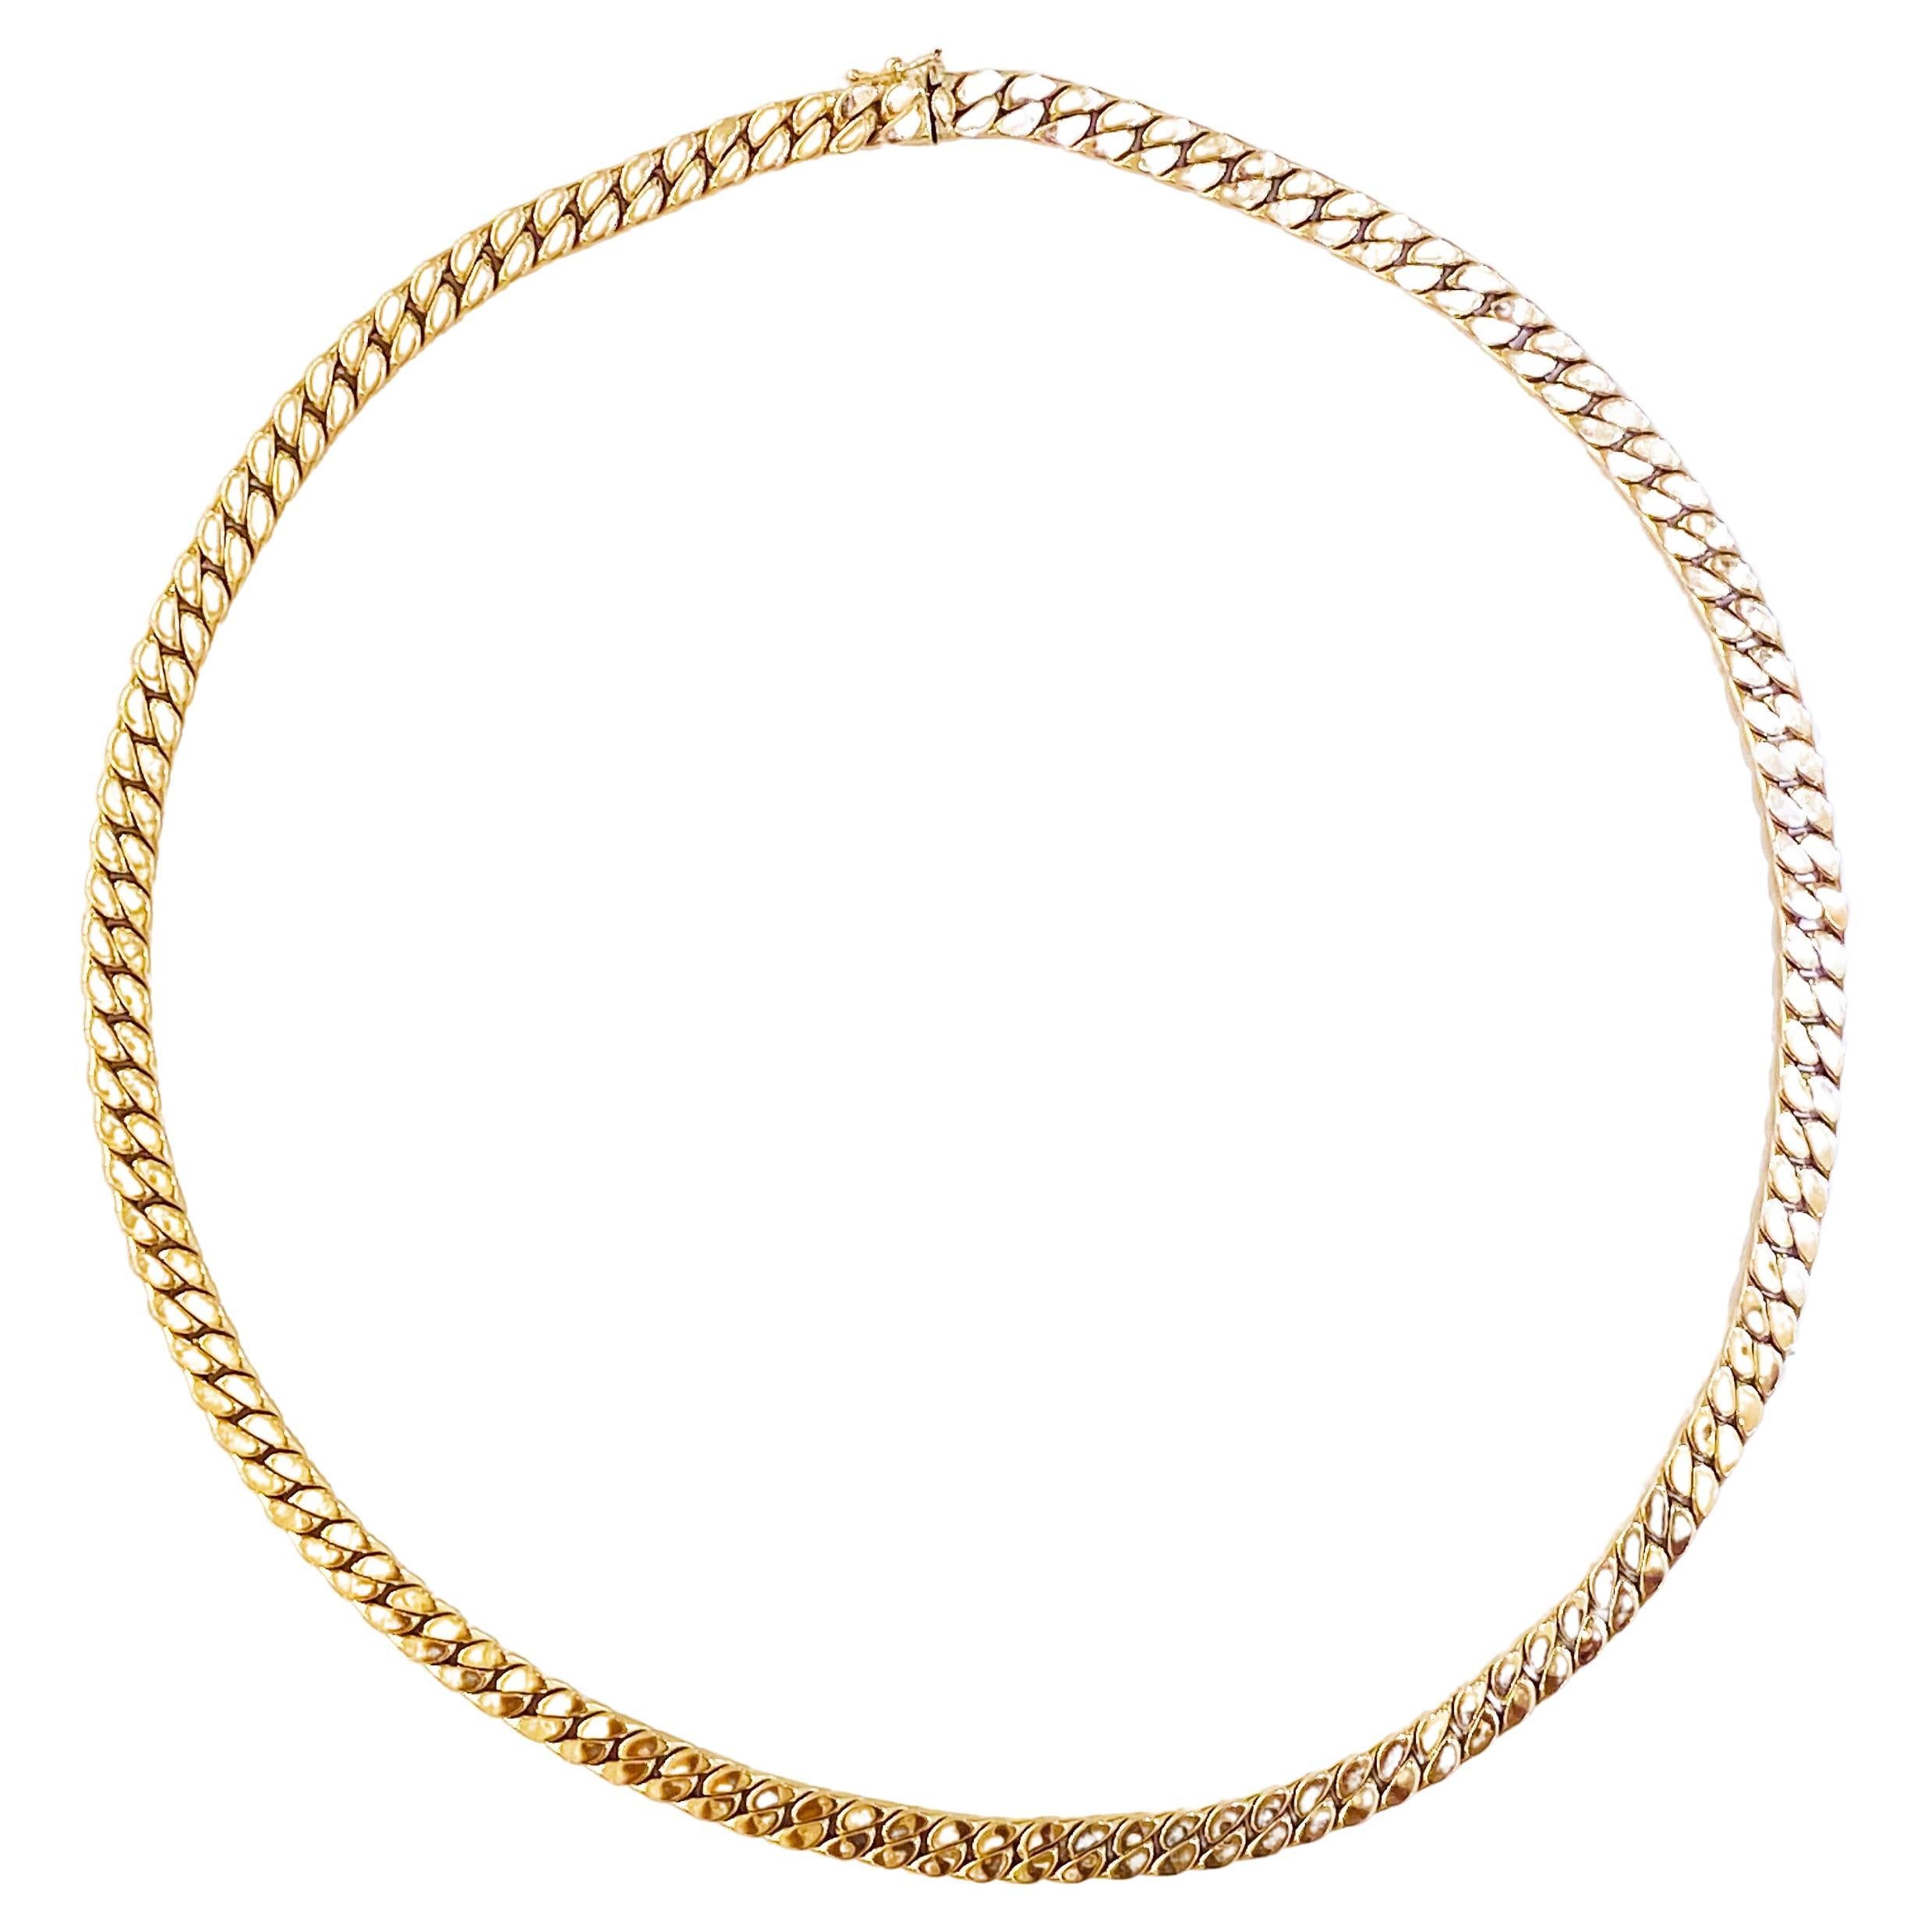 Cuban Chain Halskette 14K Gelbgold Semi-Solid Kette Miami